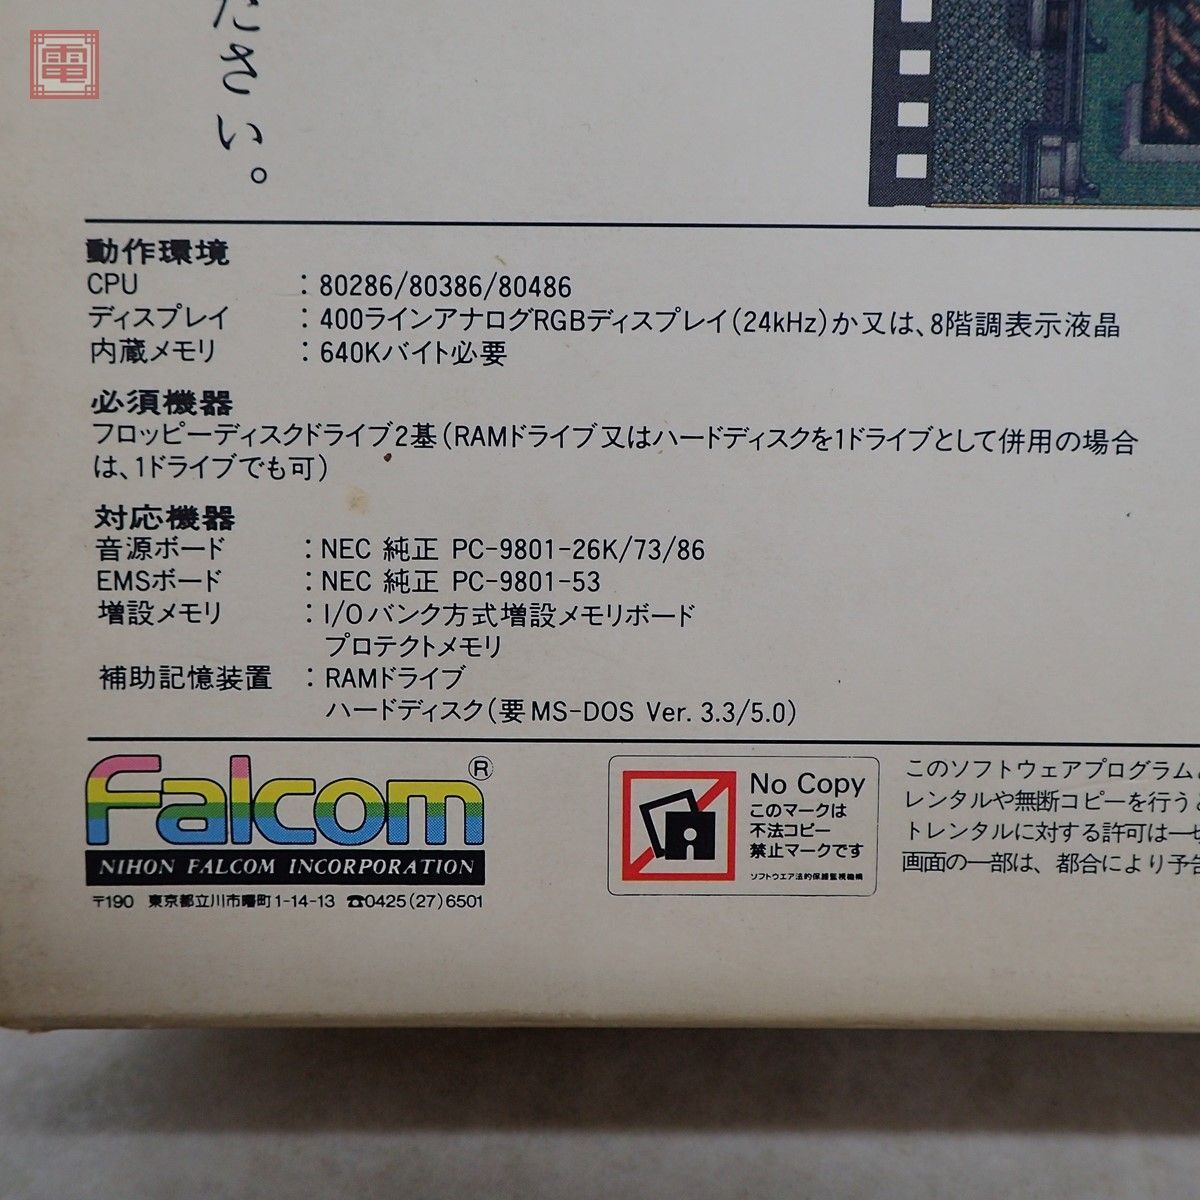 PC-9801 3.5 дюймовый FD The Legend of Heroes III белый .. женщина обновленный Falco mFalcom коробка мнение есть [20